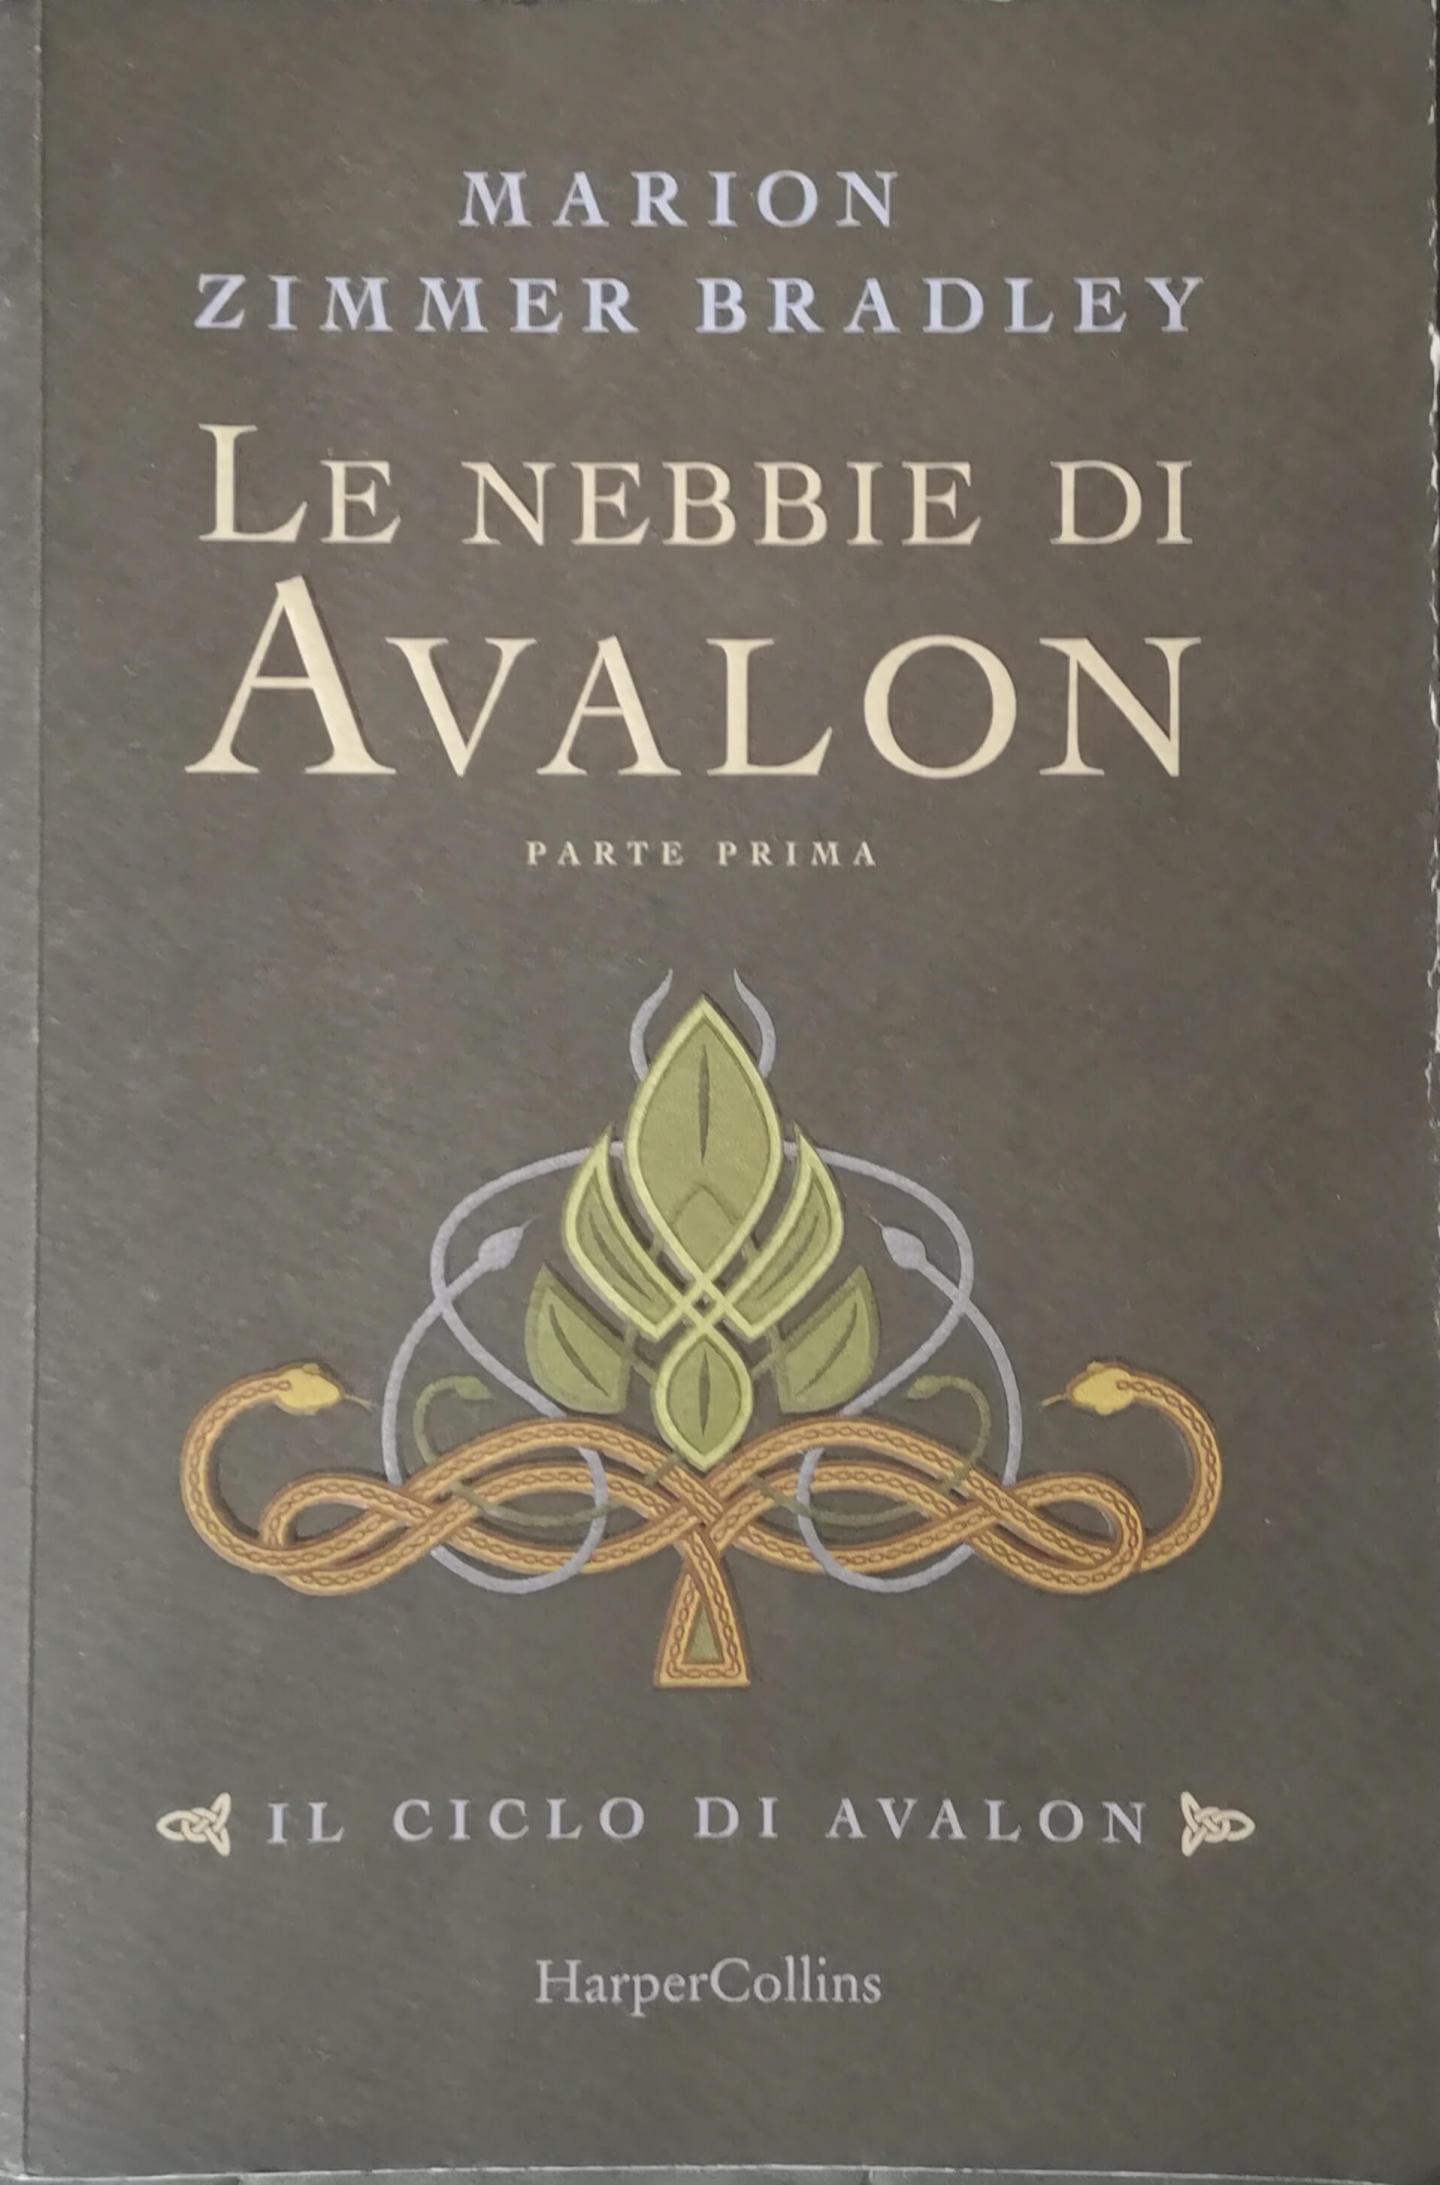 Le nebbie di Avalon libro